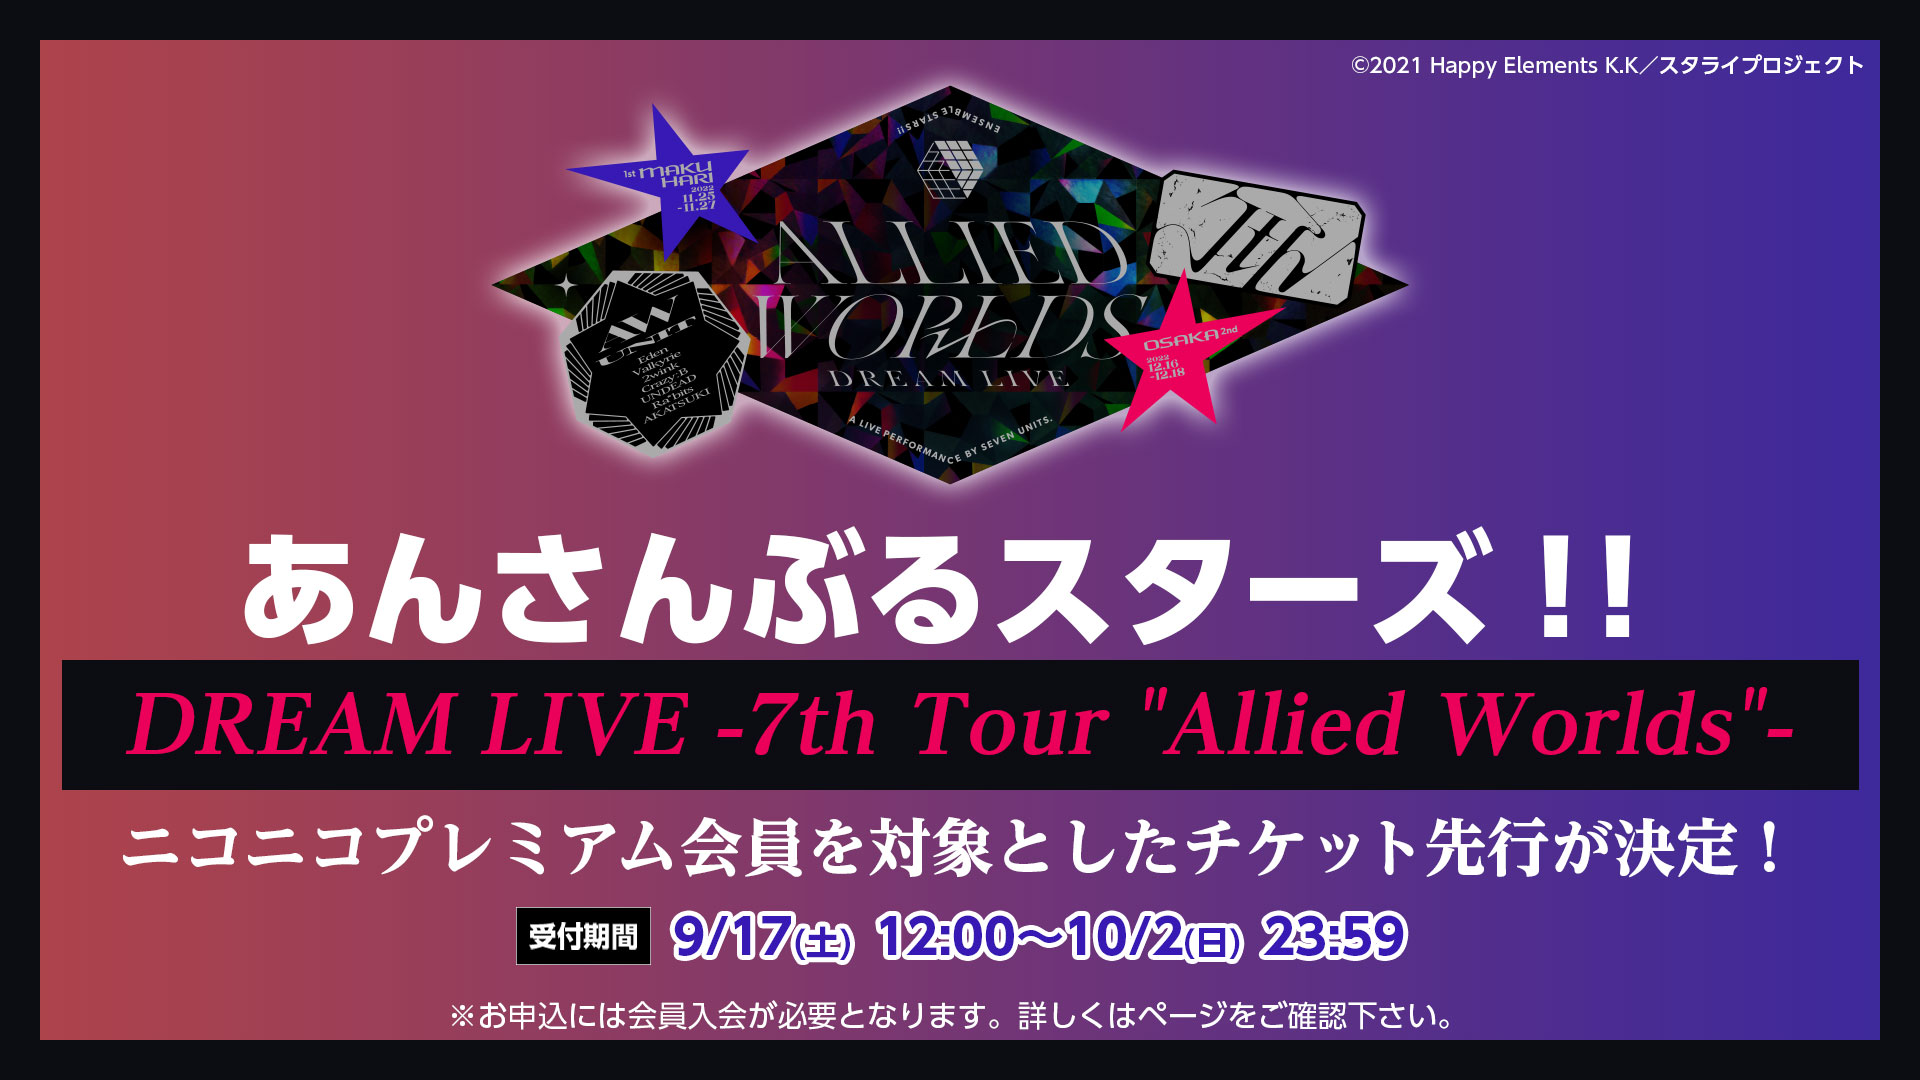 あんさんぶるスターズ！！DREAM LIVE -7th Tour Allied Worlds- チケット先行申込 | ニコニコ